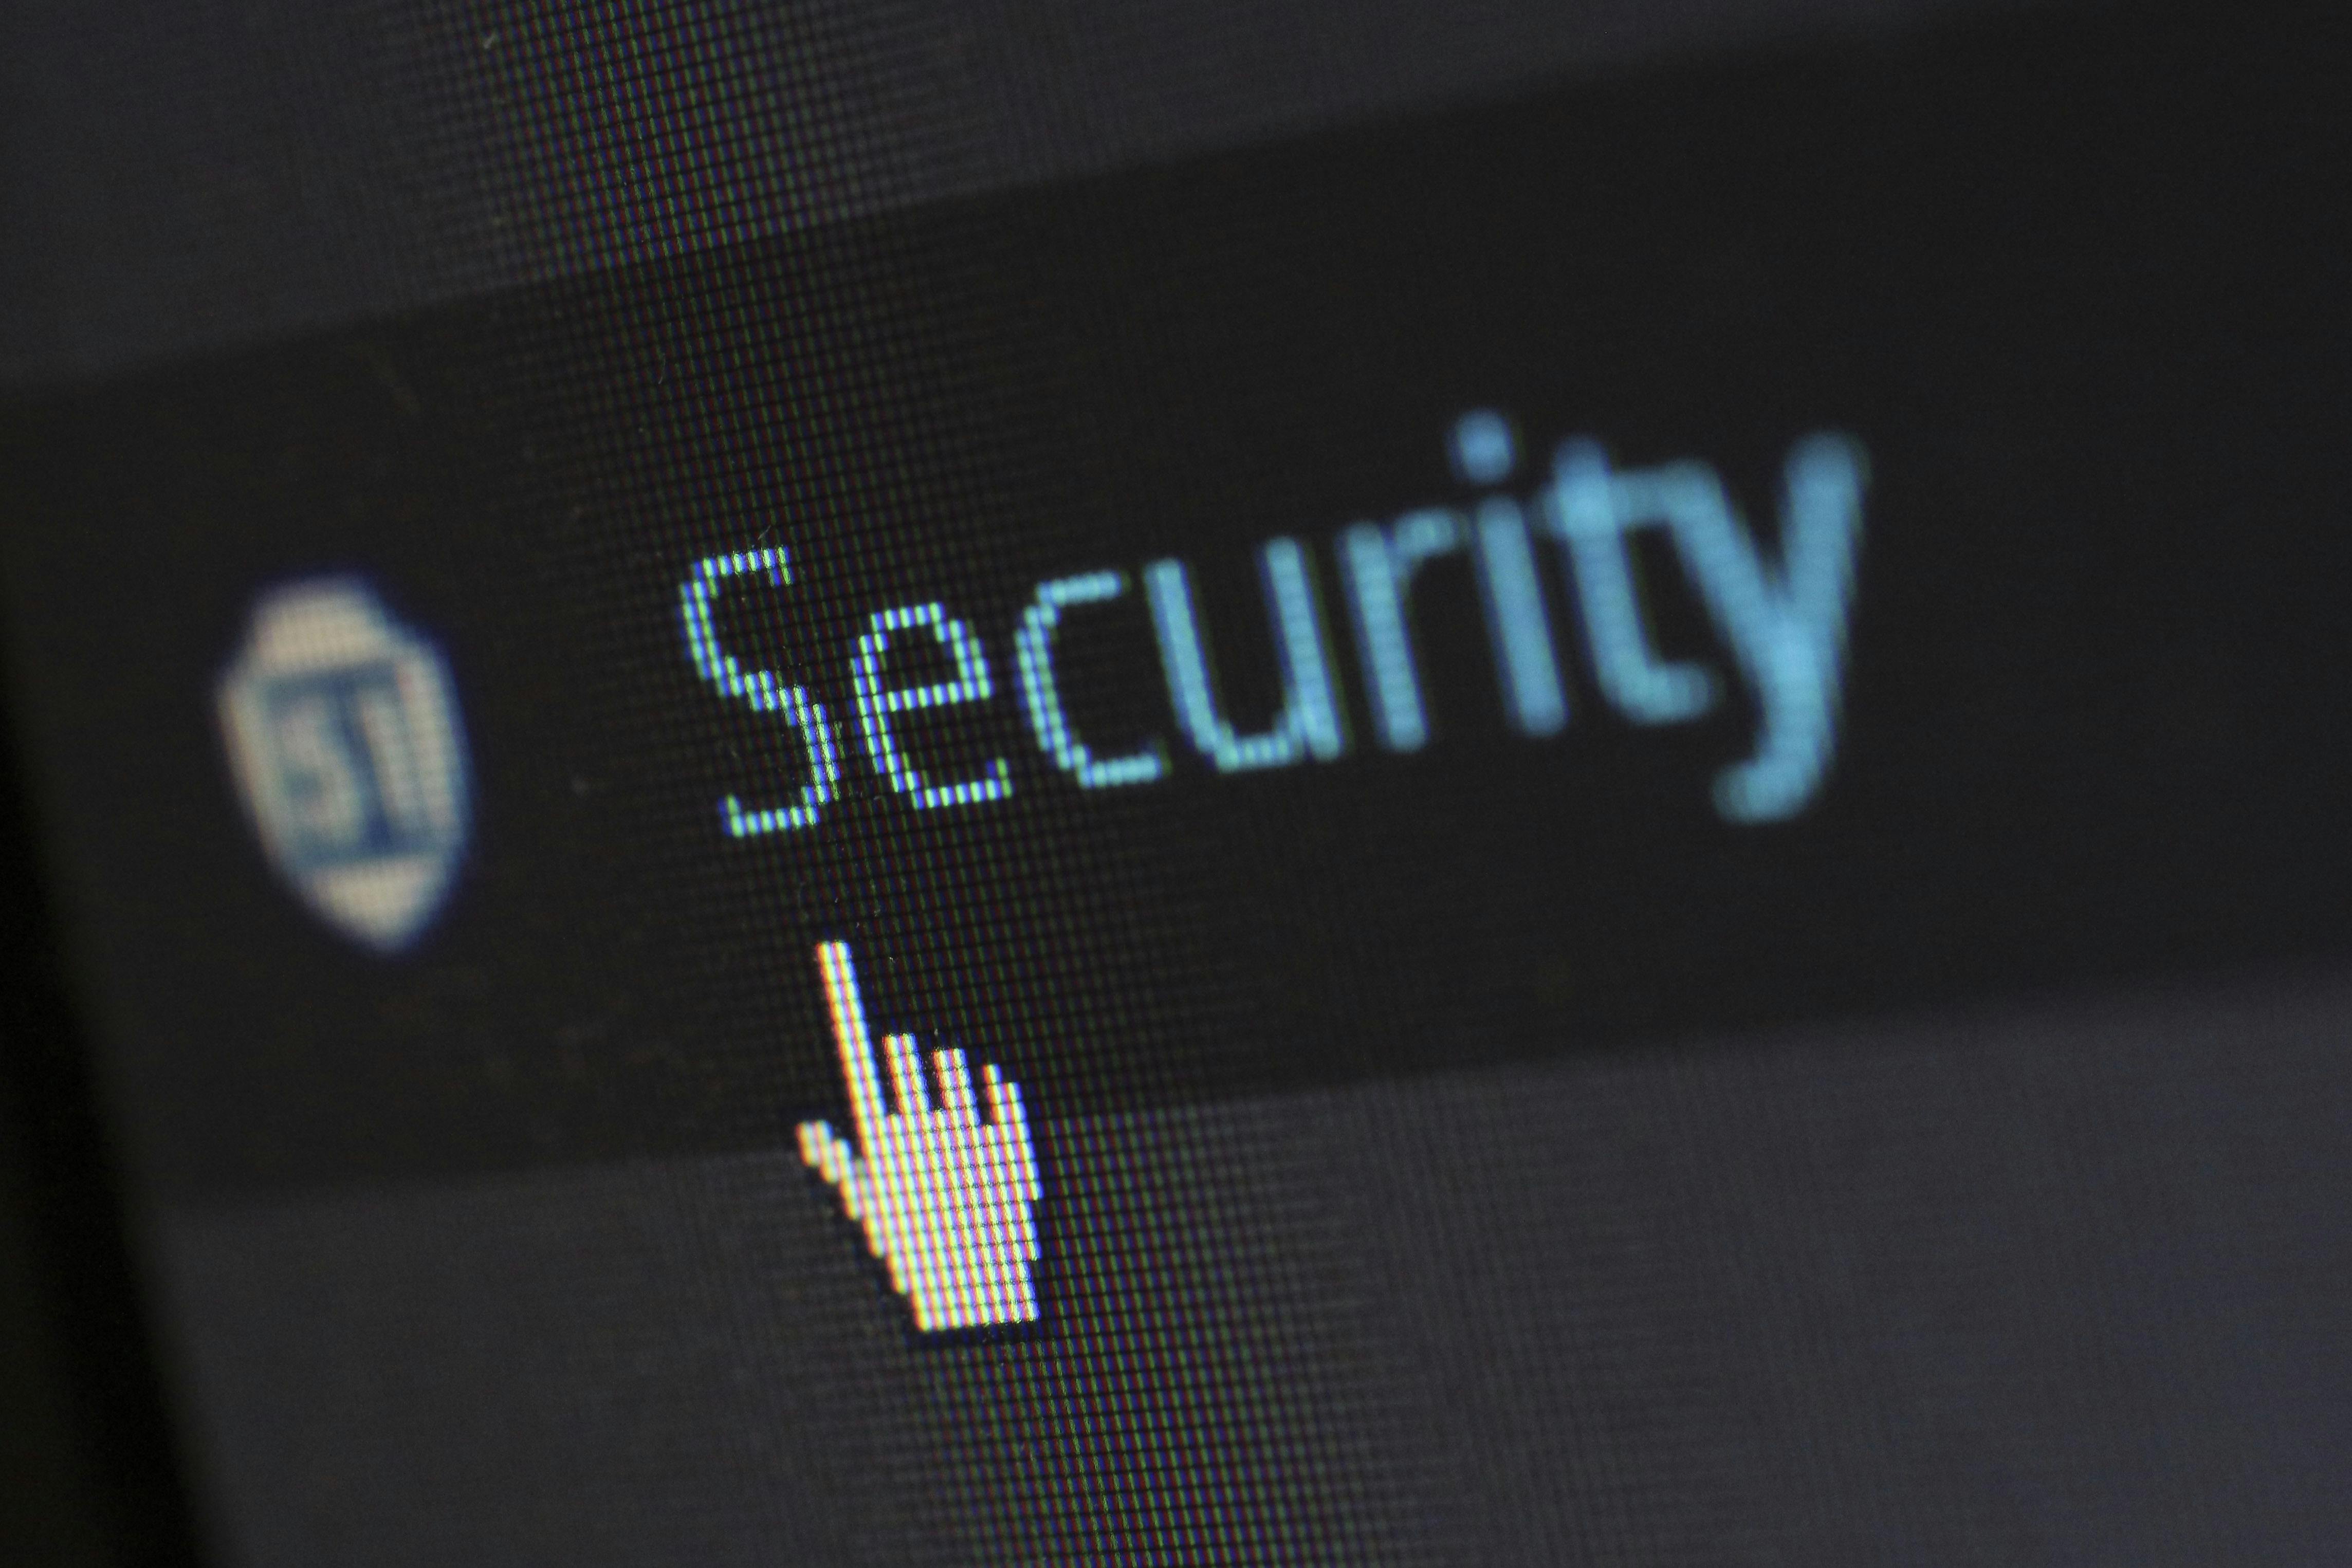 Cybersecurity in Digital World